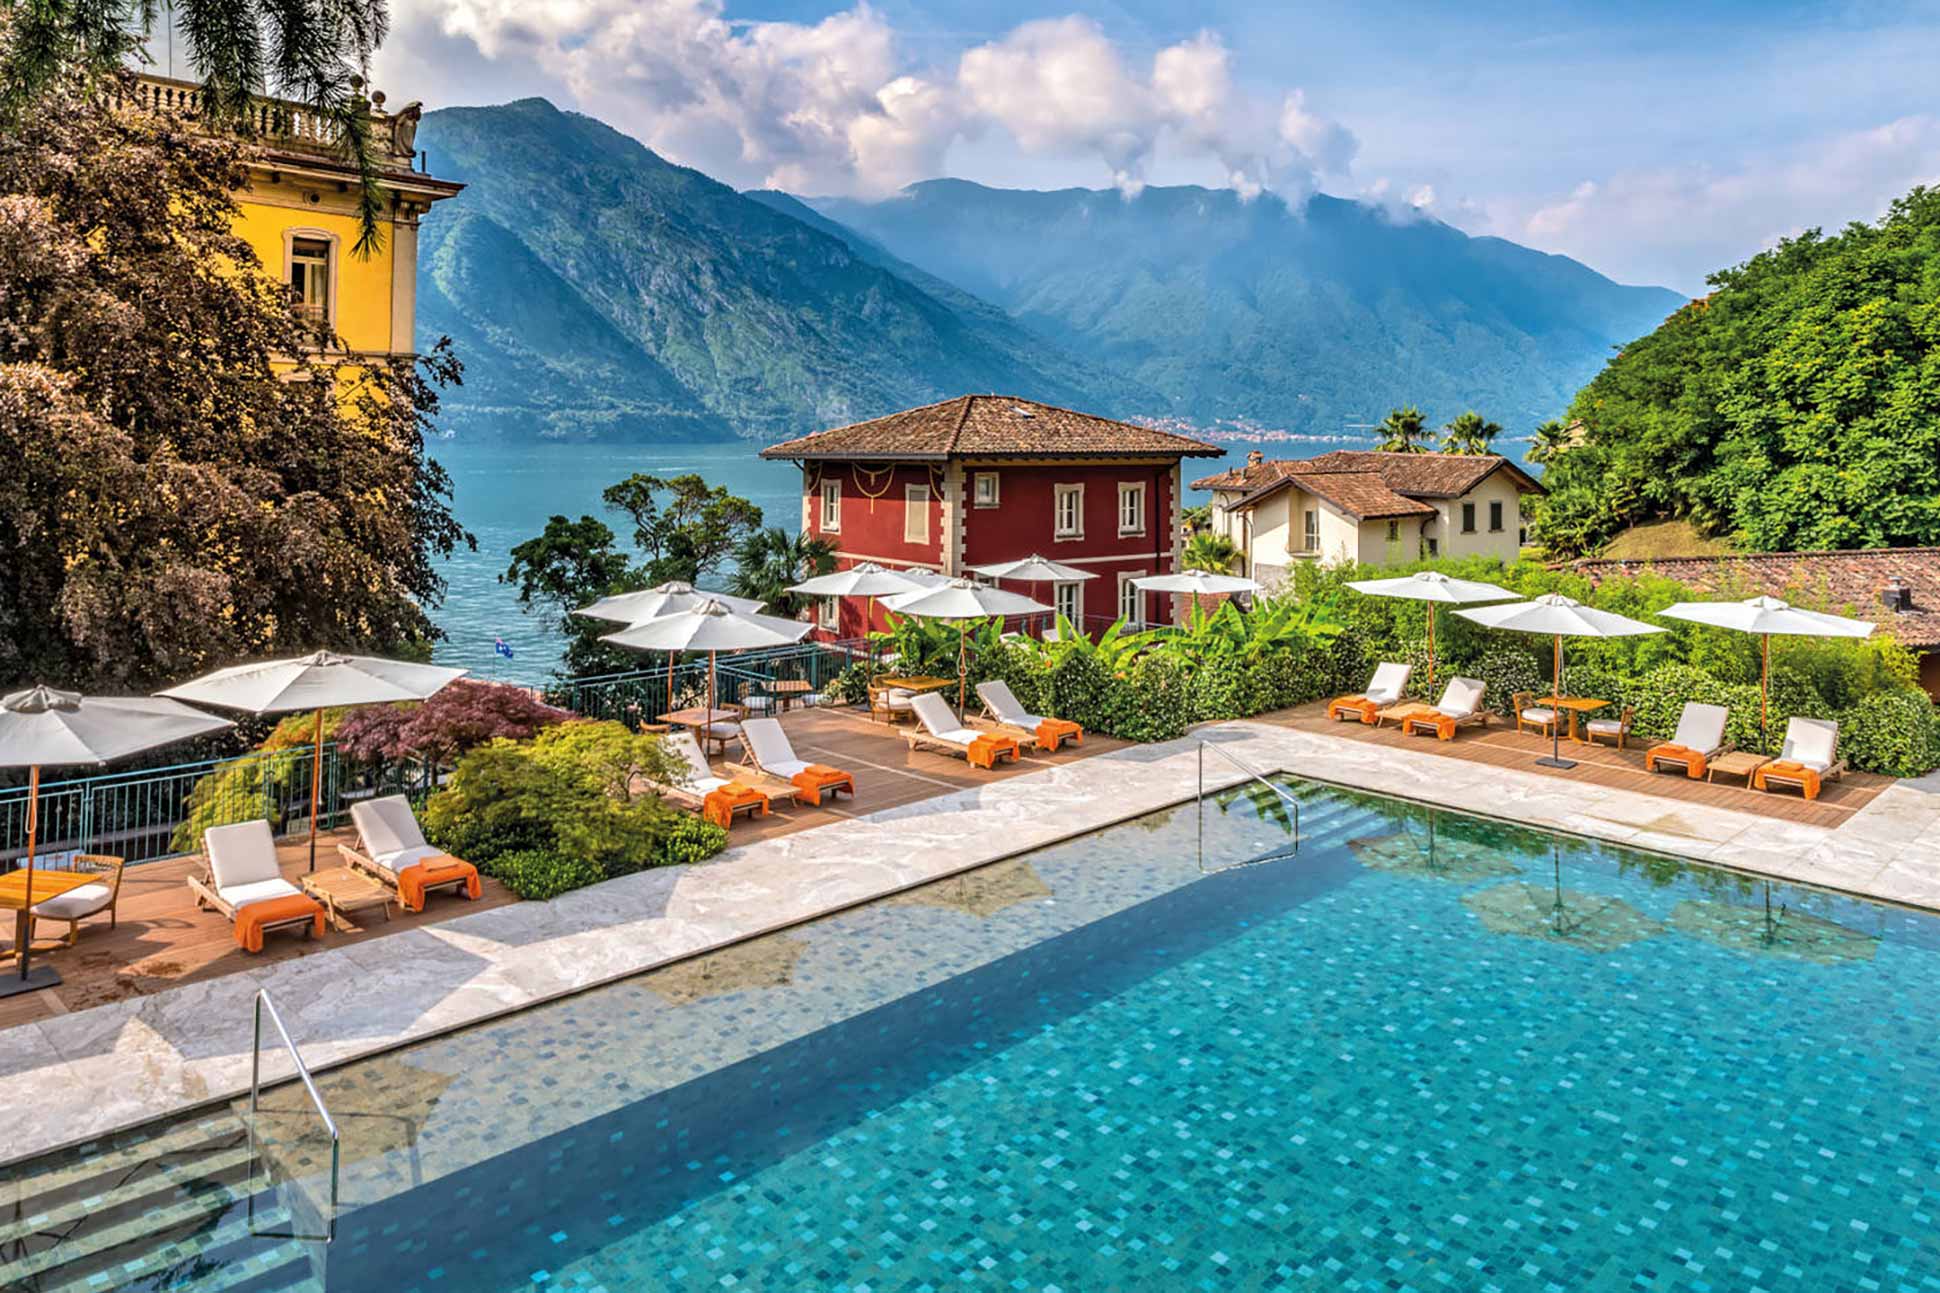 Grand Hotel Tremezzo & Villa Sola Cabiati <br> Lake Como, Italy